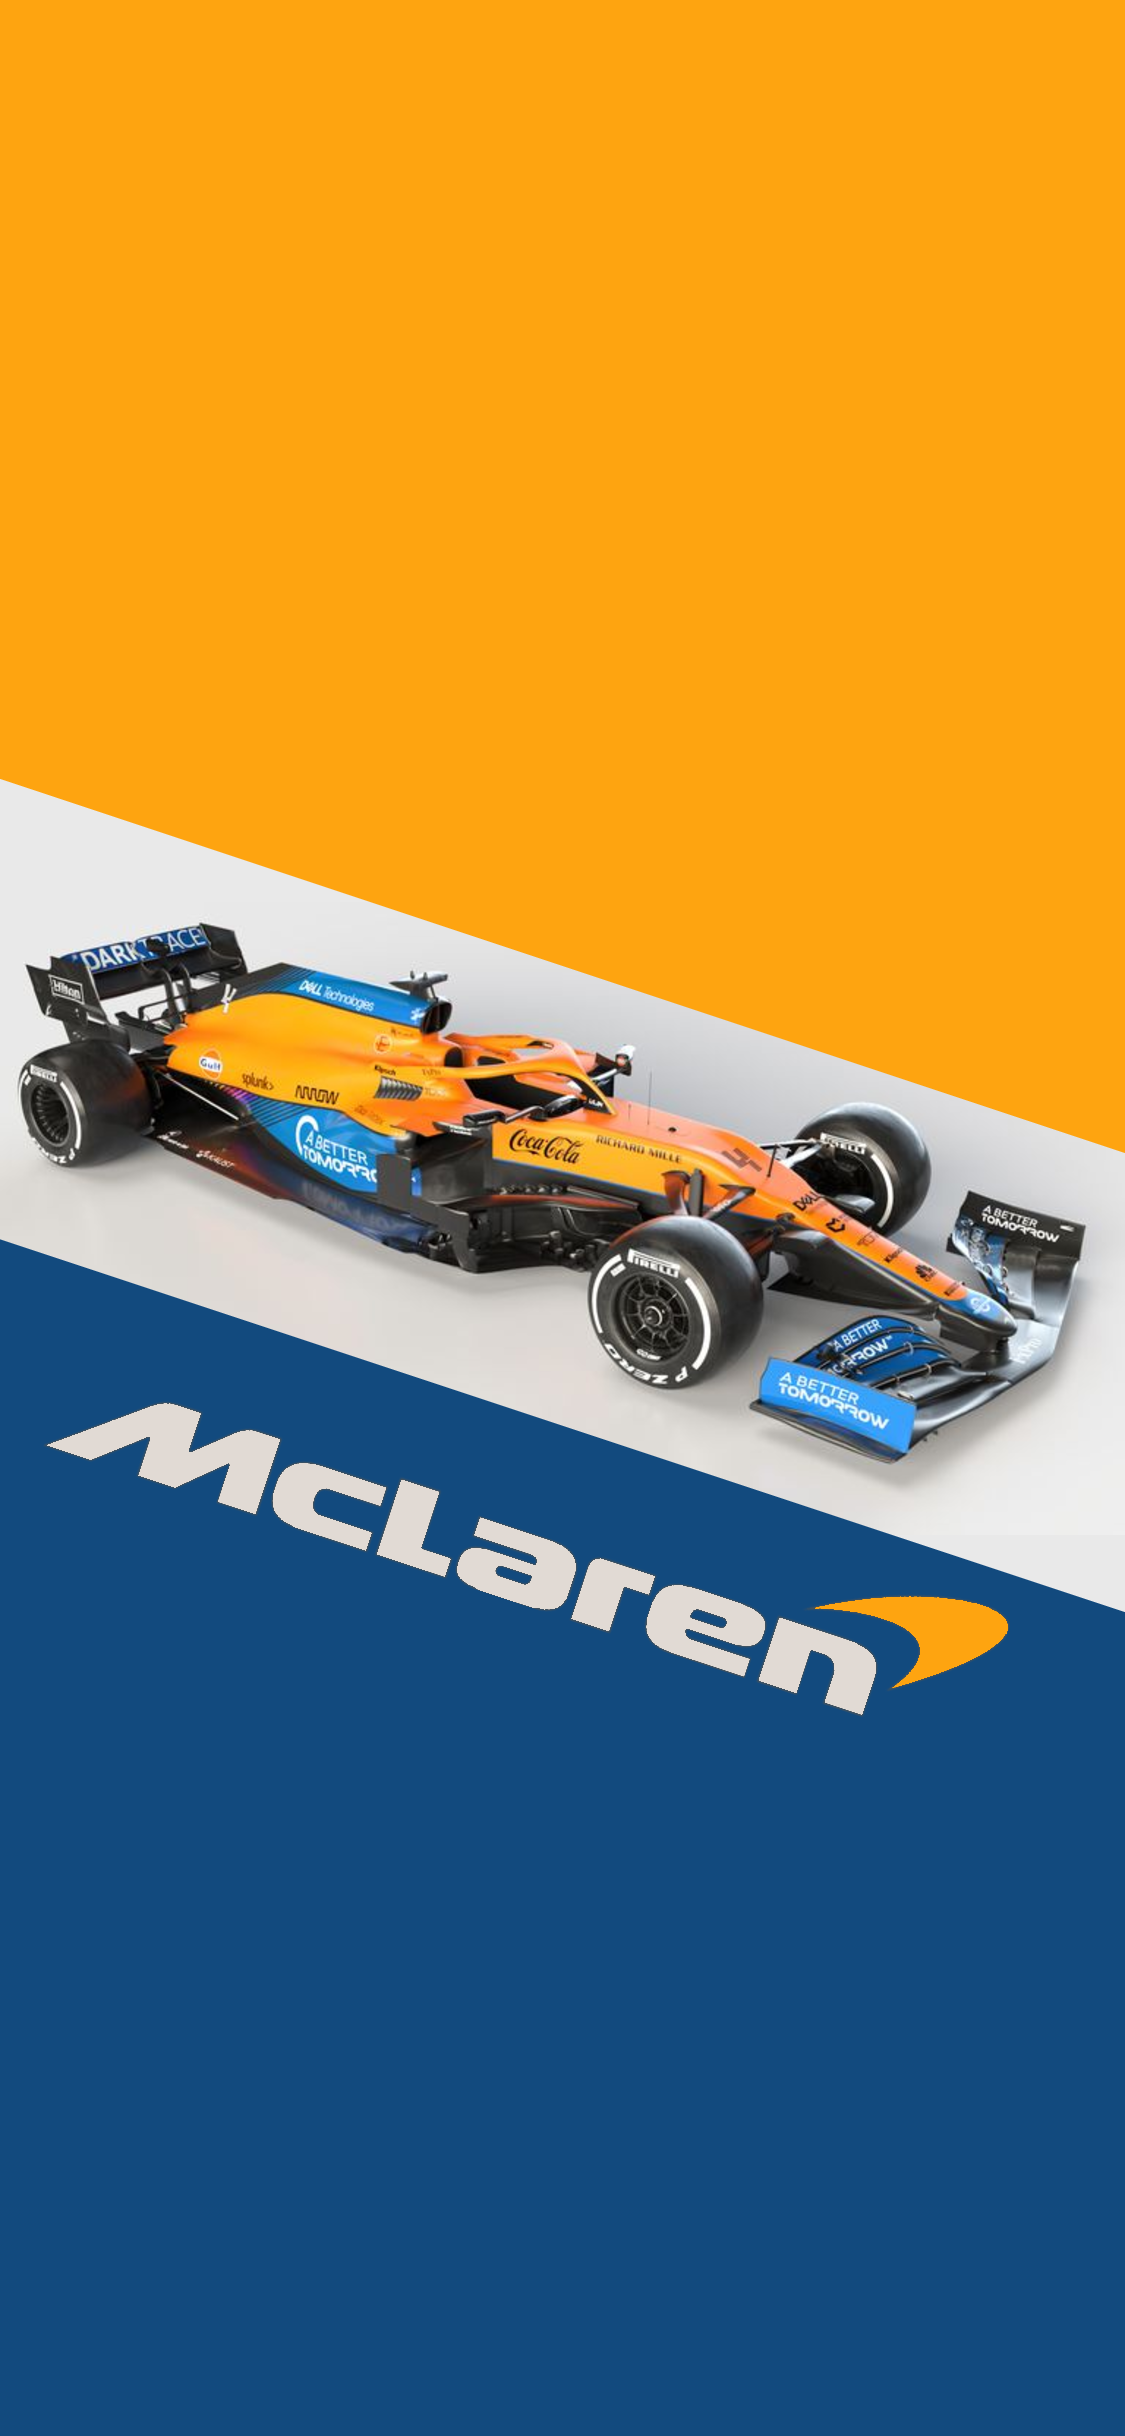 F1 2021 McLaren Wallpapers - Wallpaper Cave